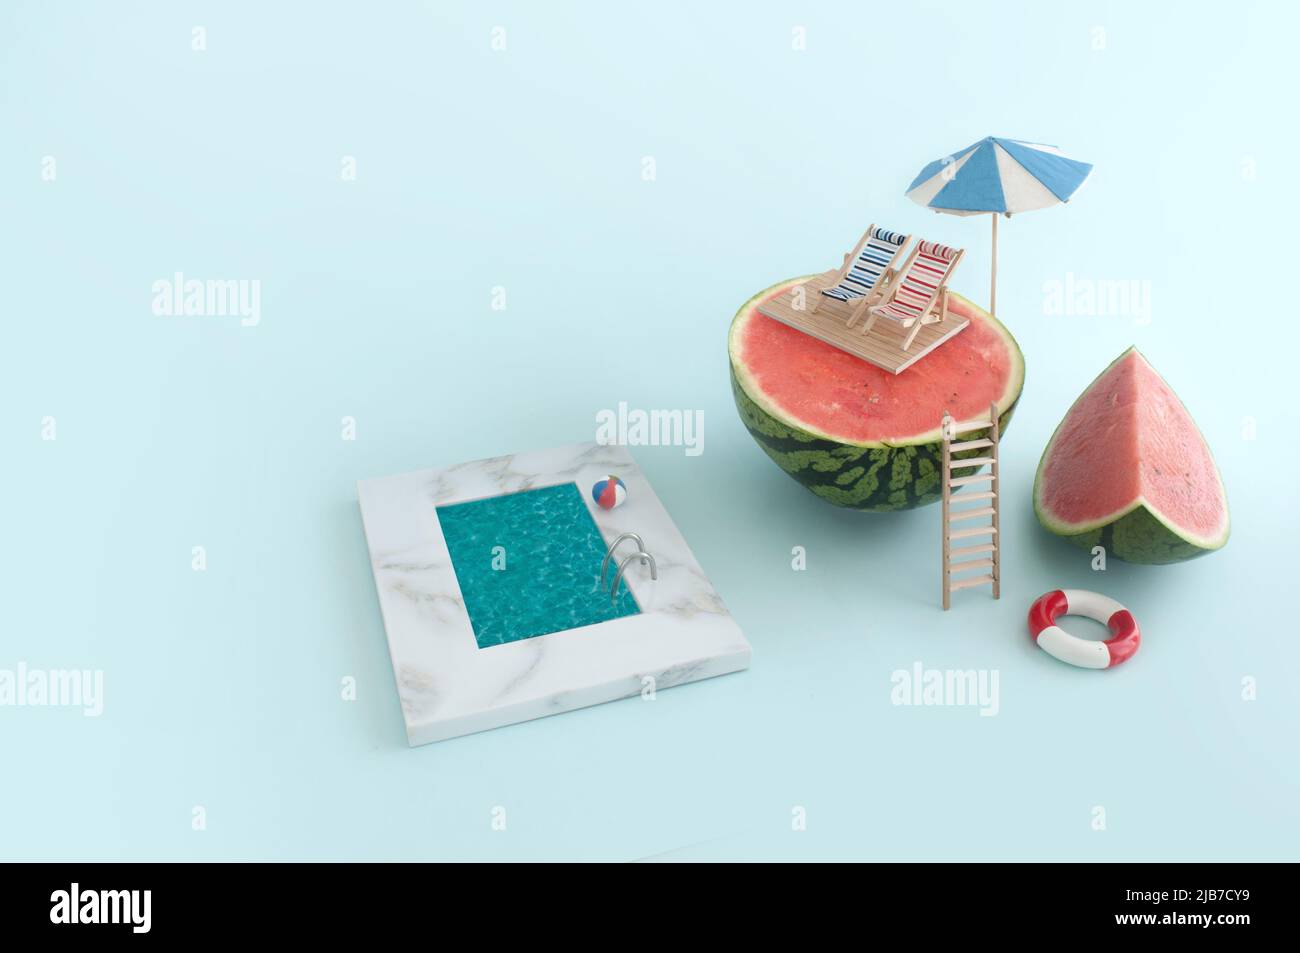 Concepto de vacaciones de verano; tumbonas y sombrilla en la parte superior de una sandía, con piscina abajo Foto de stock